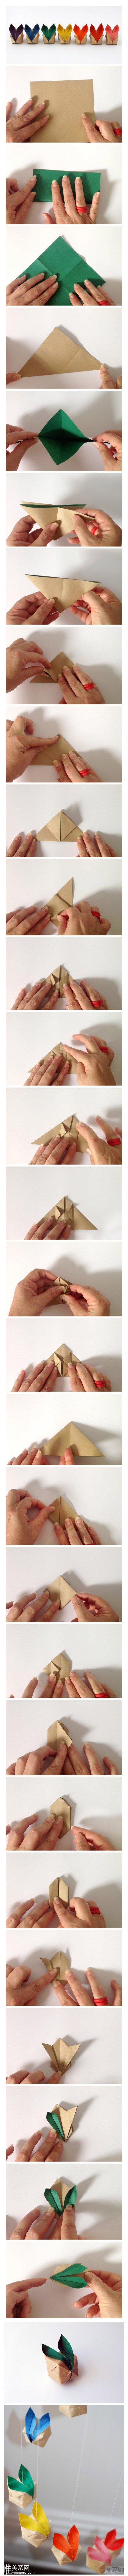 立体方形小兔子折纸手工